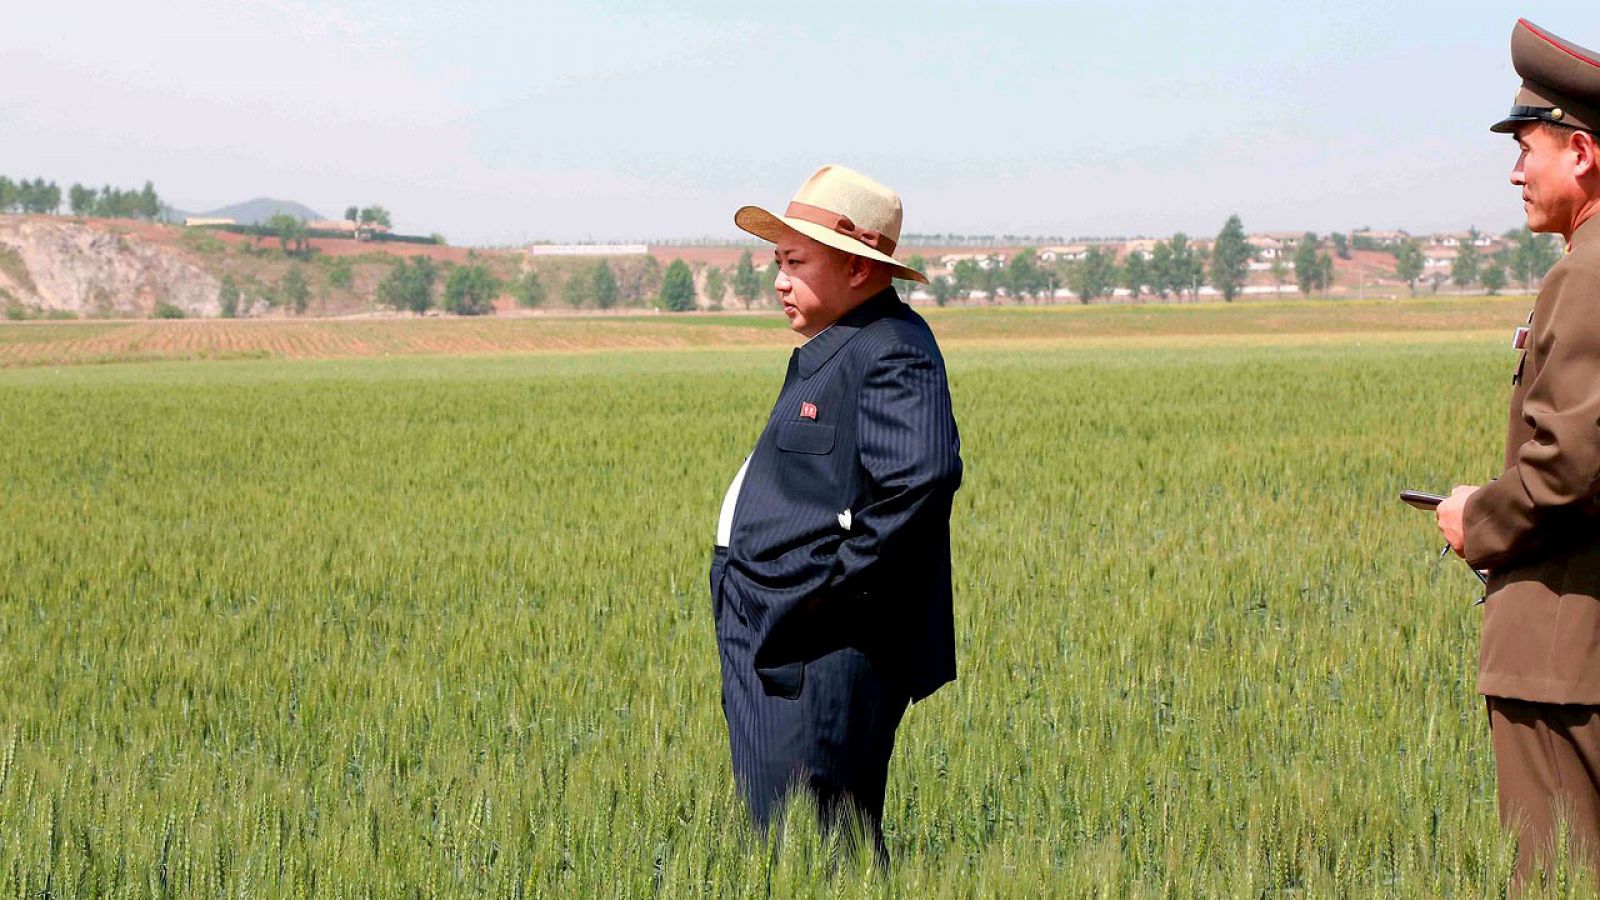 El líder norcoreano Kim Jong-Un visita una granja en una imagen de archivo.